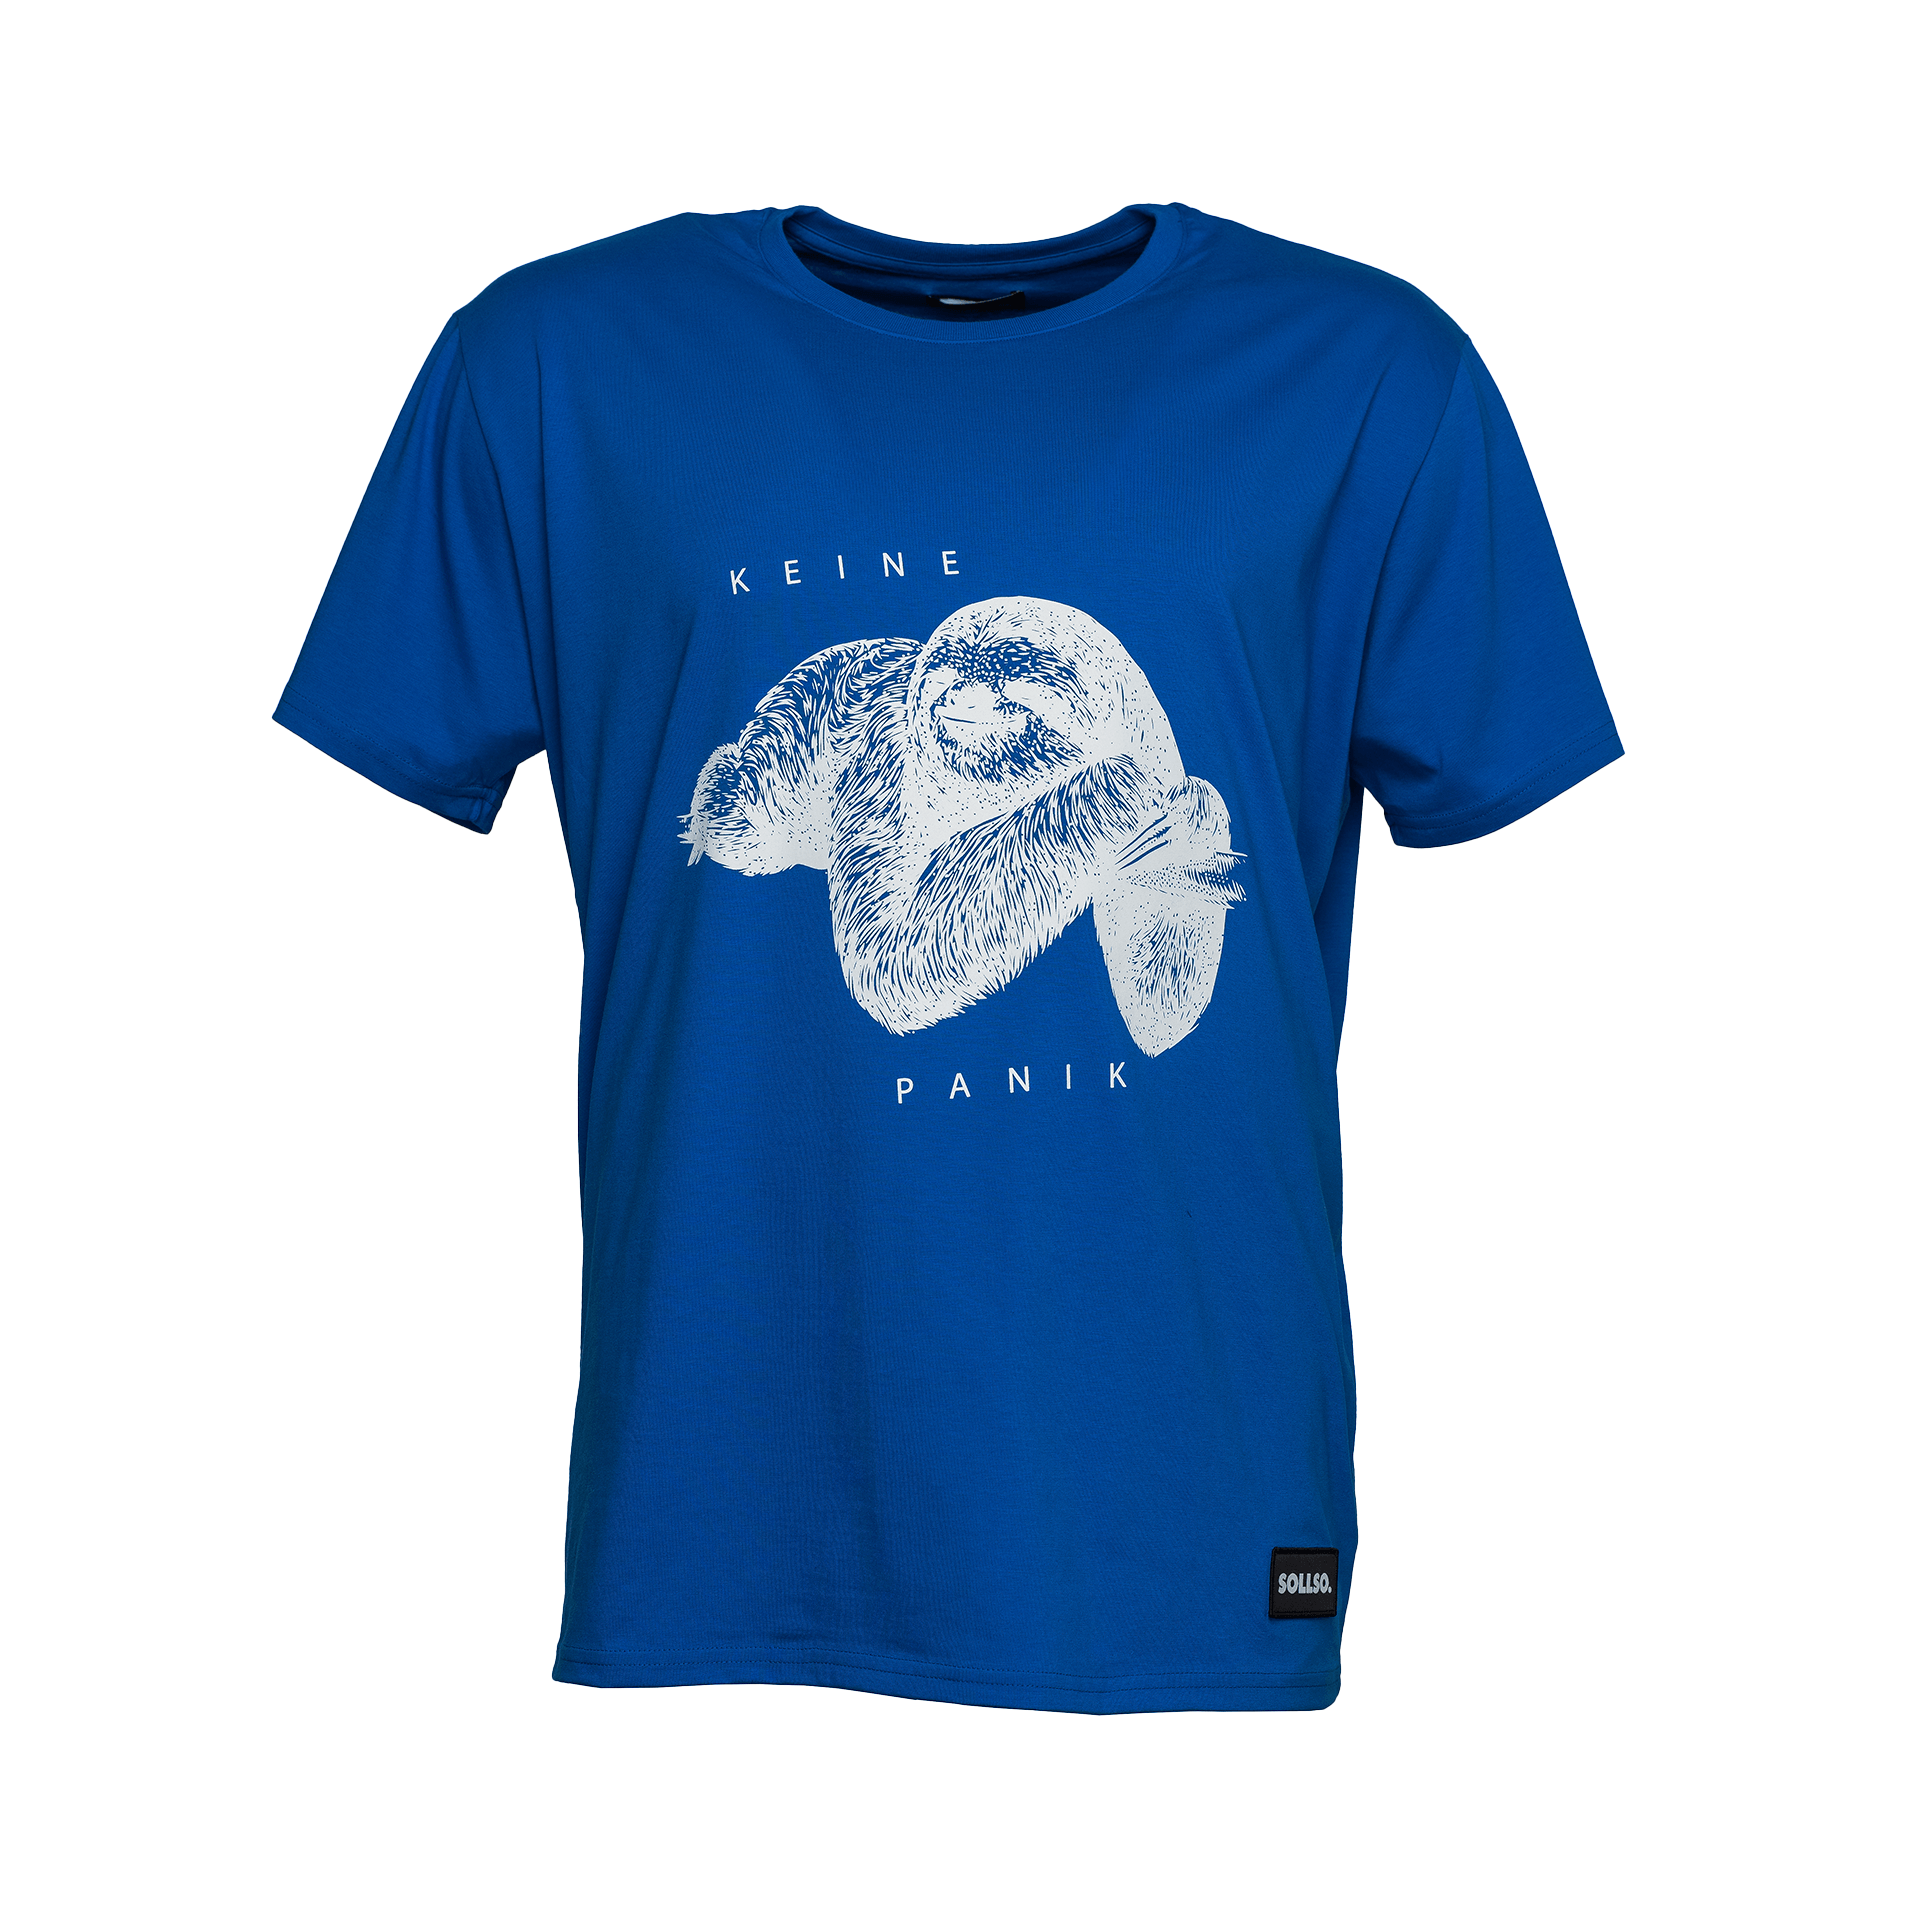 SOLLSO. T-Shirt "Keine Panik Faultier", Farbe Ocean Blue, Größe L